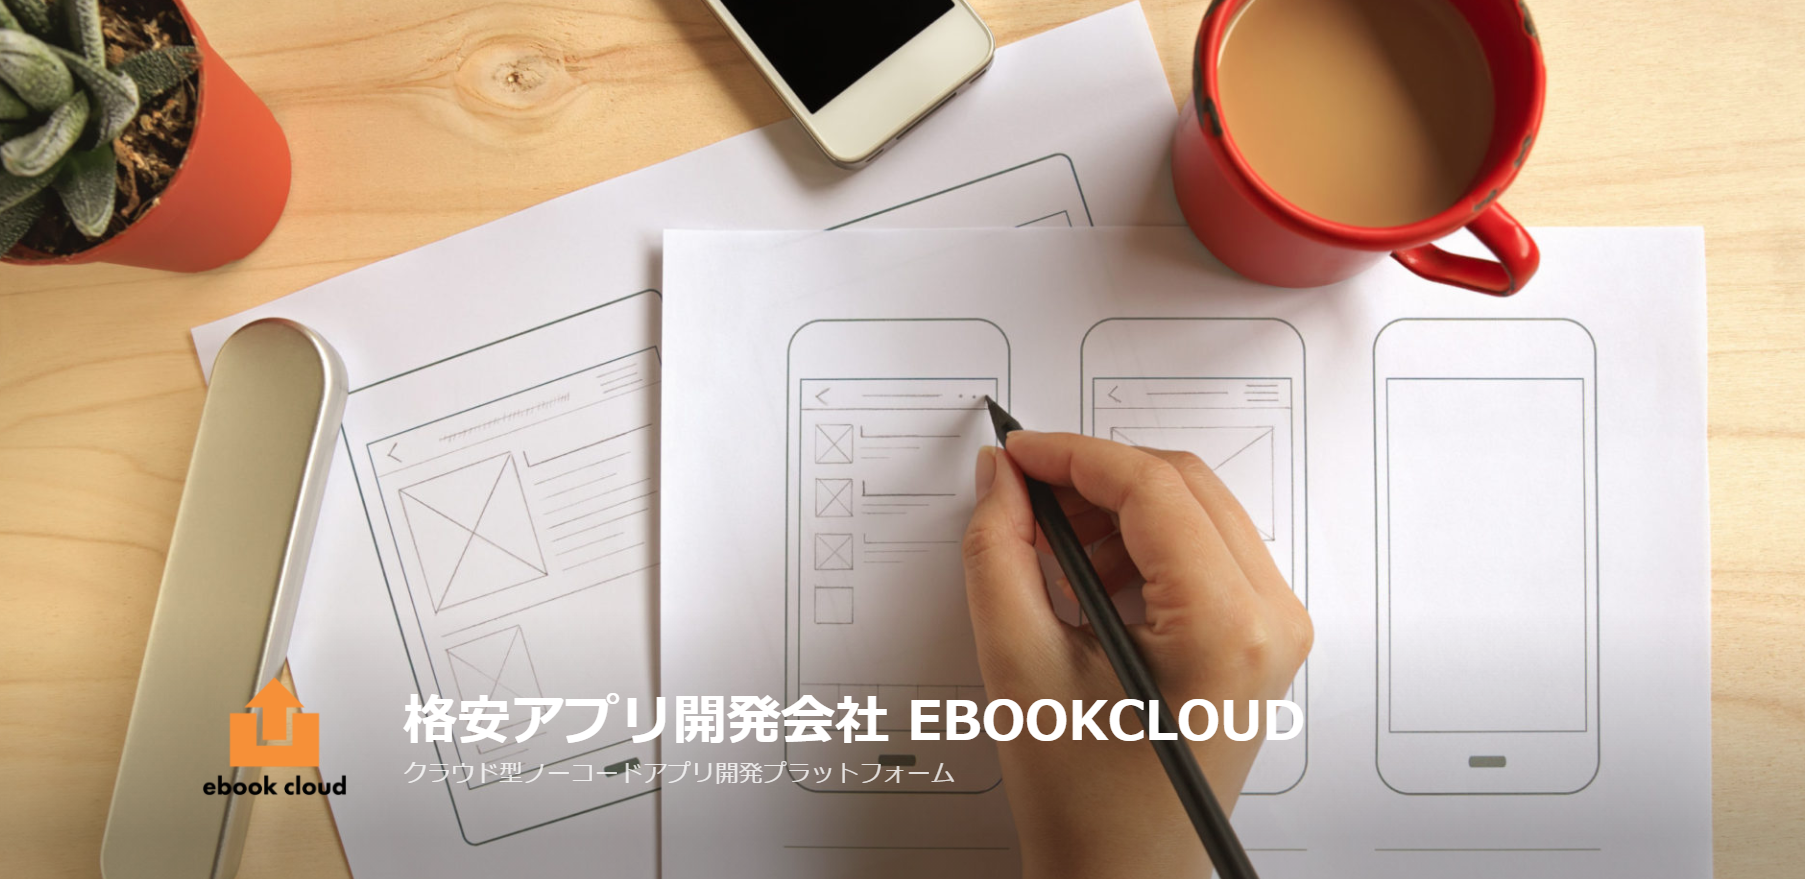 株式会社ebookcloudの株式会社ebookcloudサービス